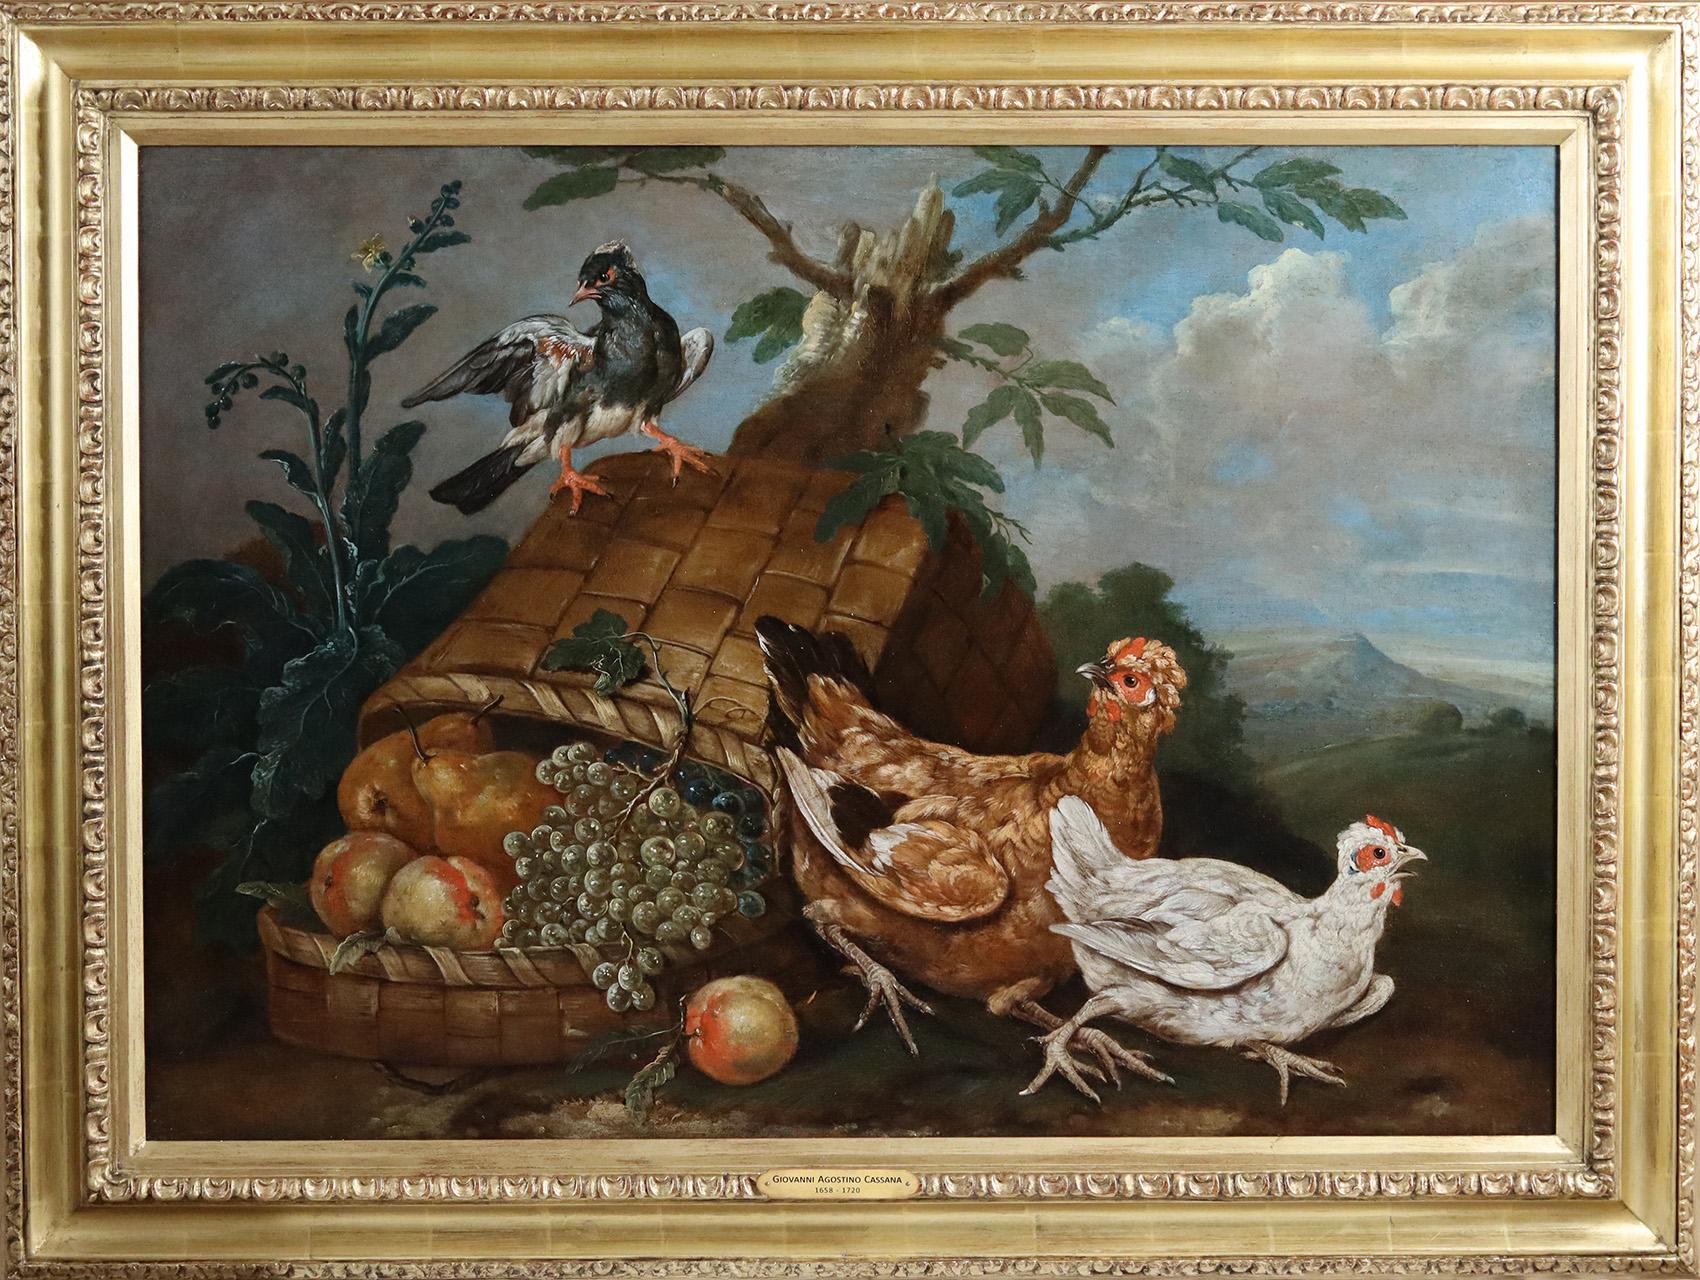 Vögel mit einem umgedrehten Obstkorb 1 – Painting von Giovanni Agostino Cassana 